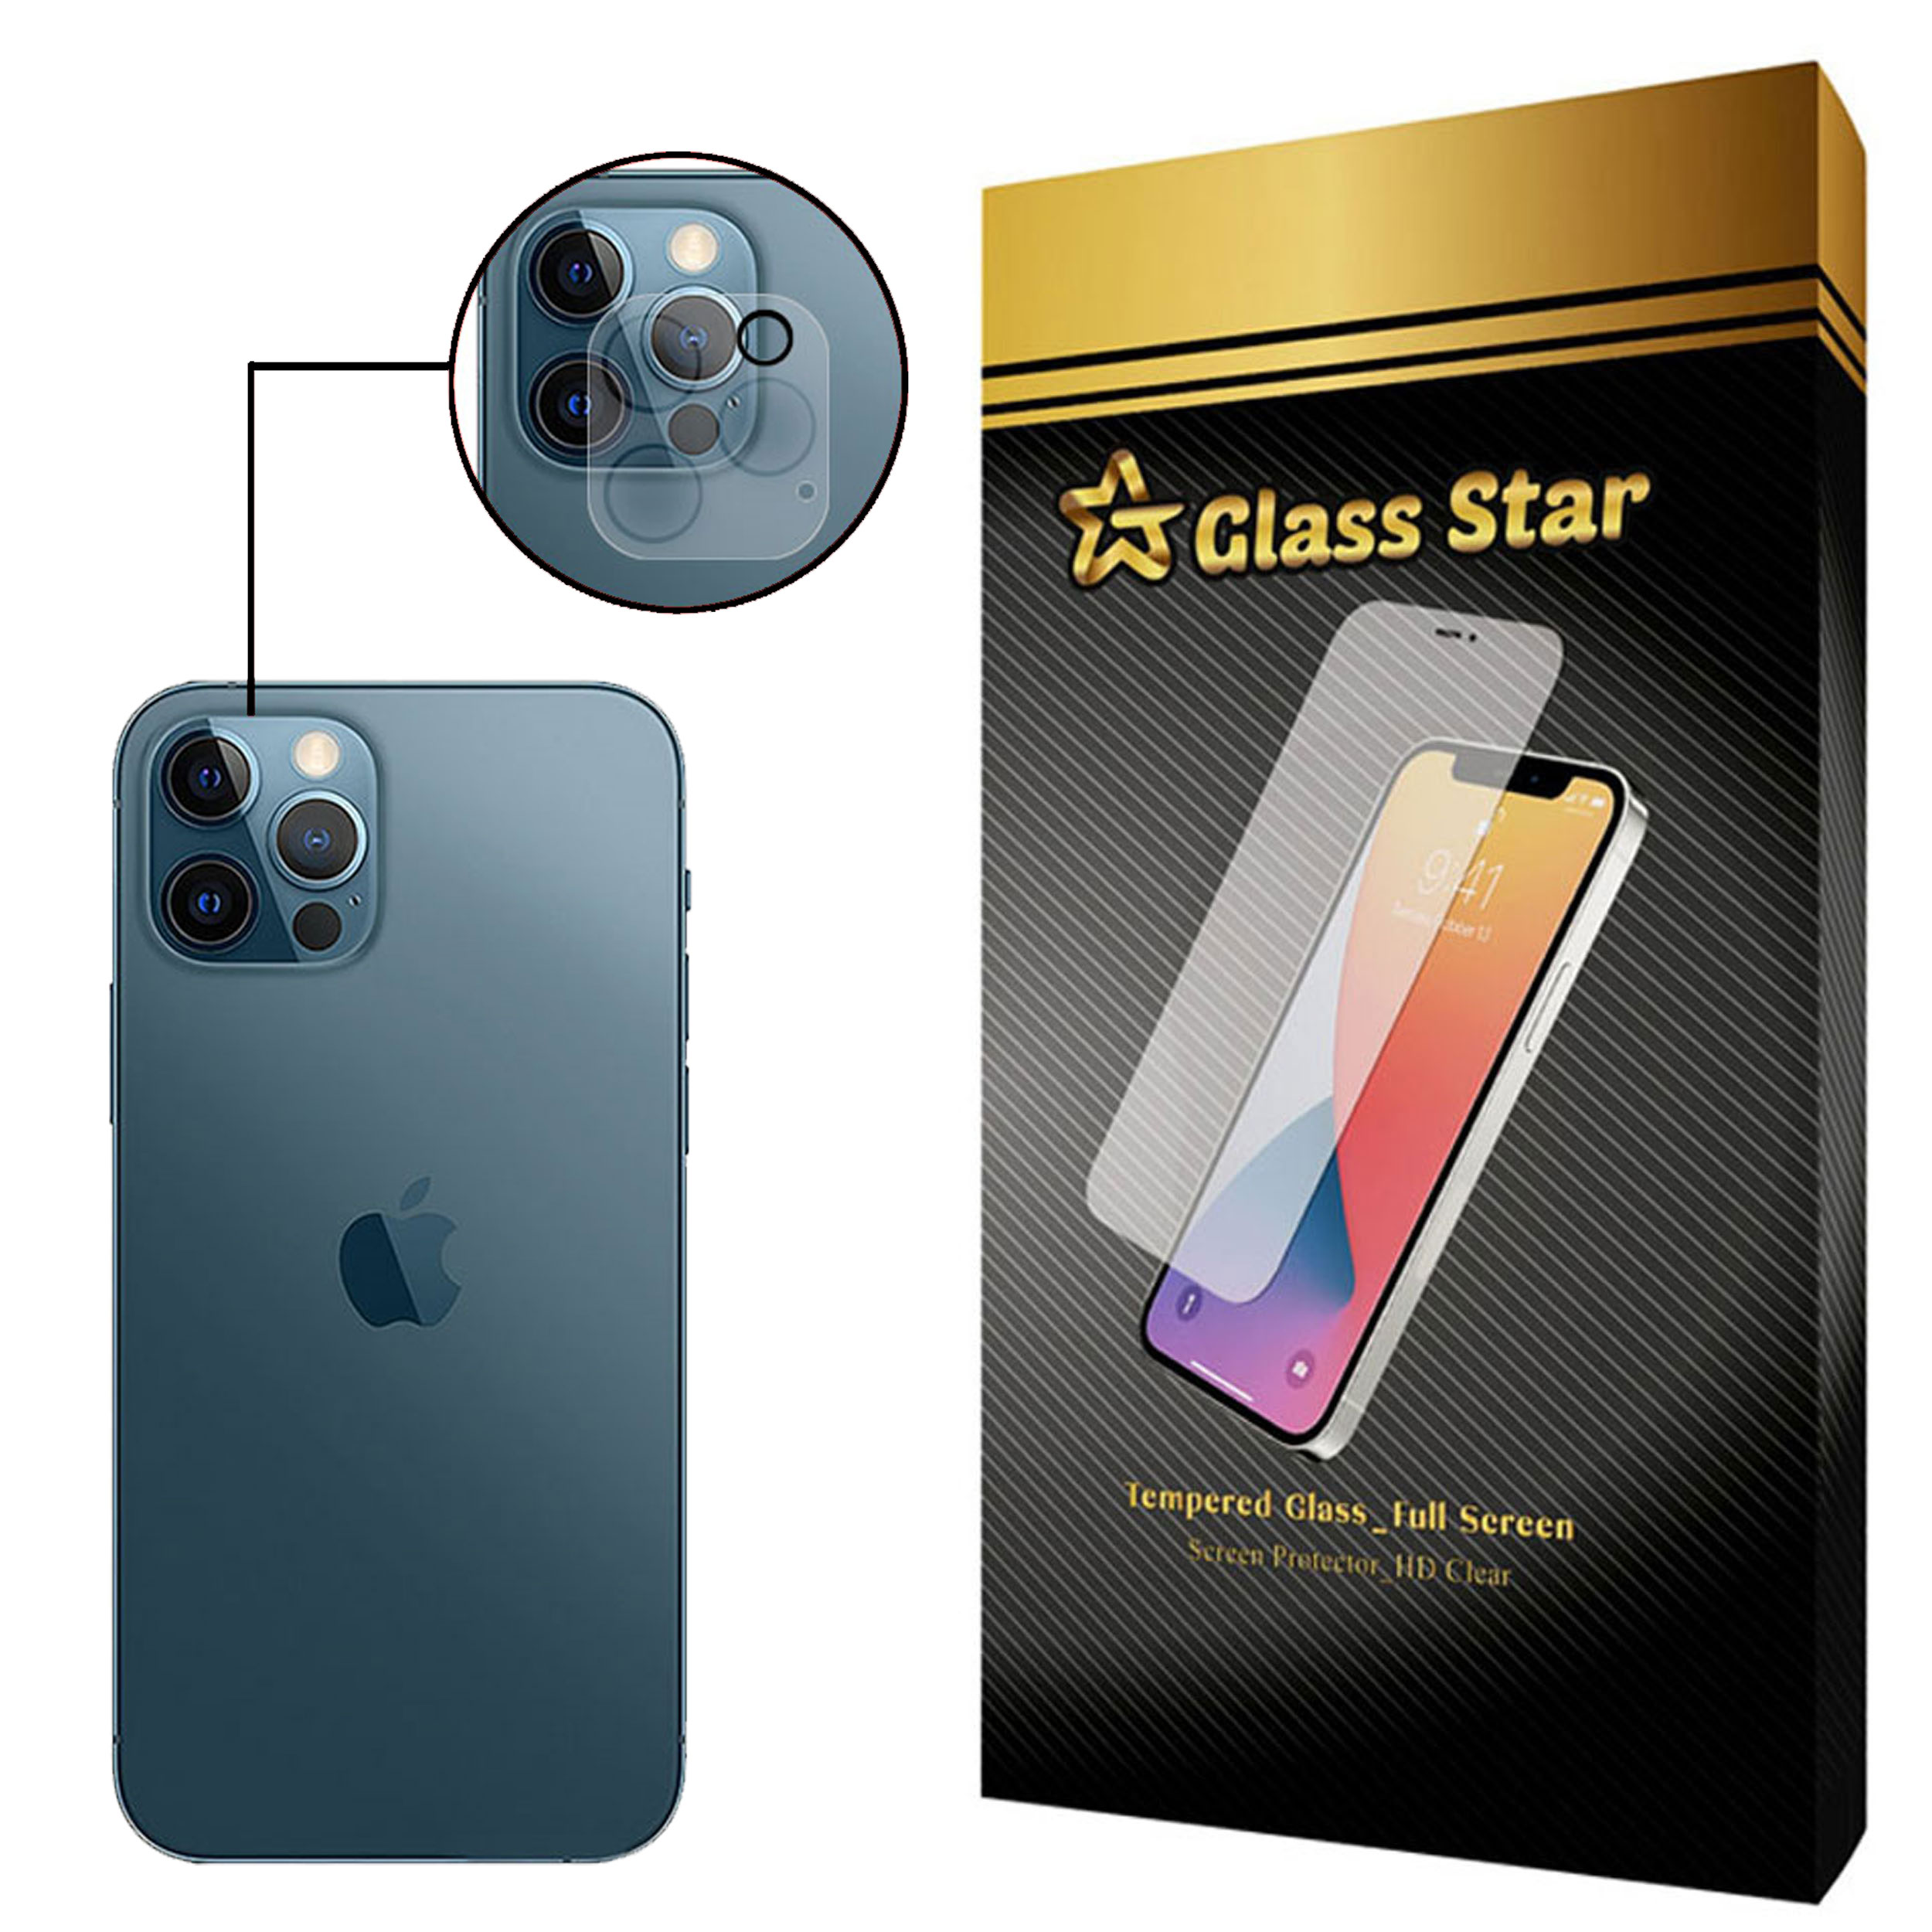   محافظ لنز دوربین گلس استار مدل L3D مناسب برای گوشی موبایل اپل iPhone 12 Pro 